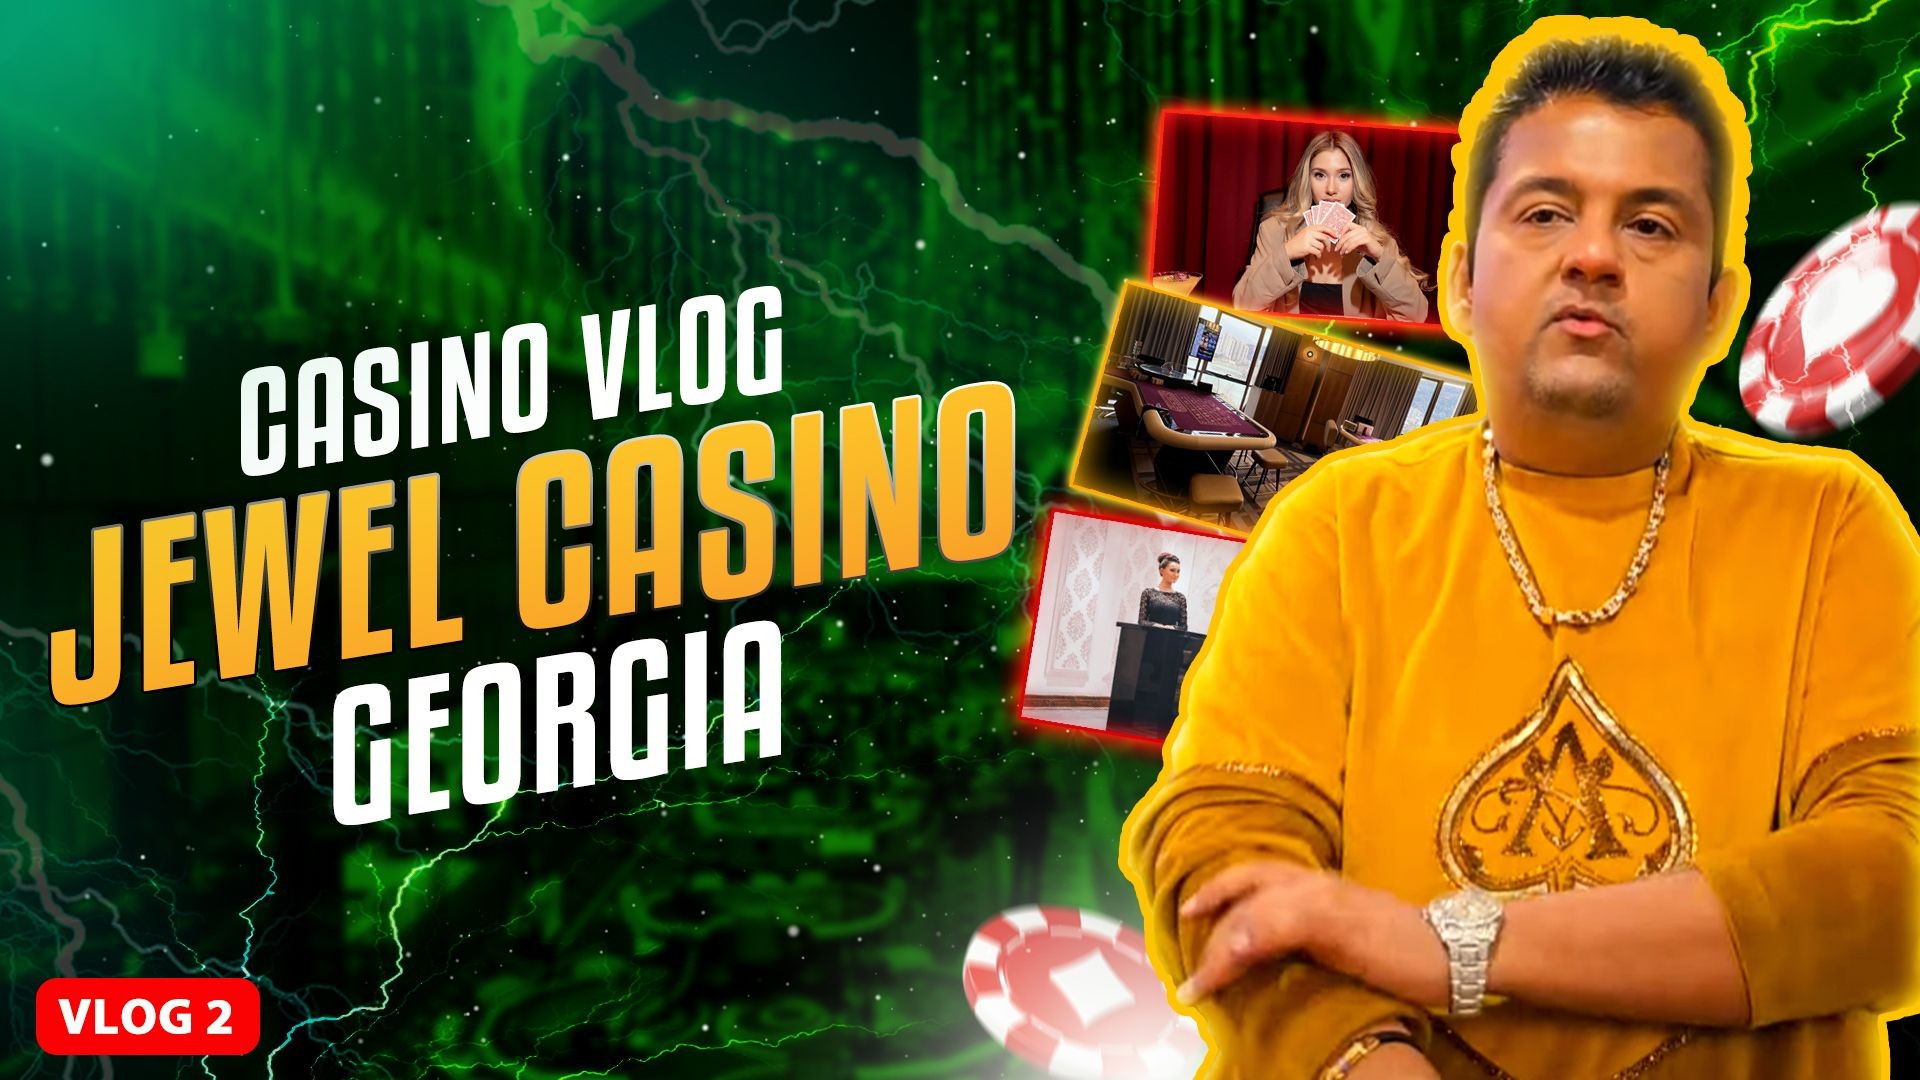 Amit CBTF - Jewel Casino Georgia VLOG-2